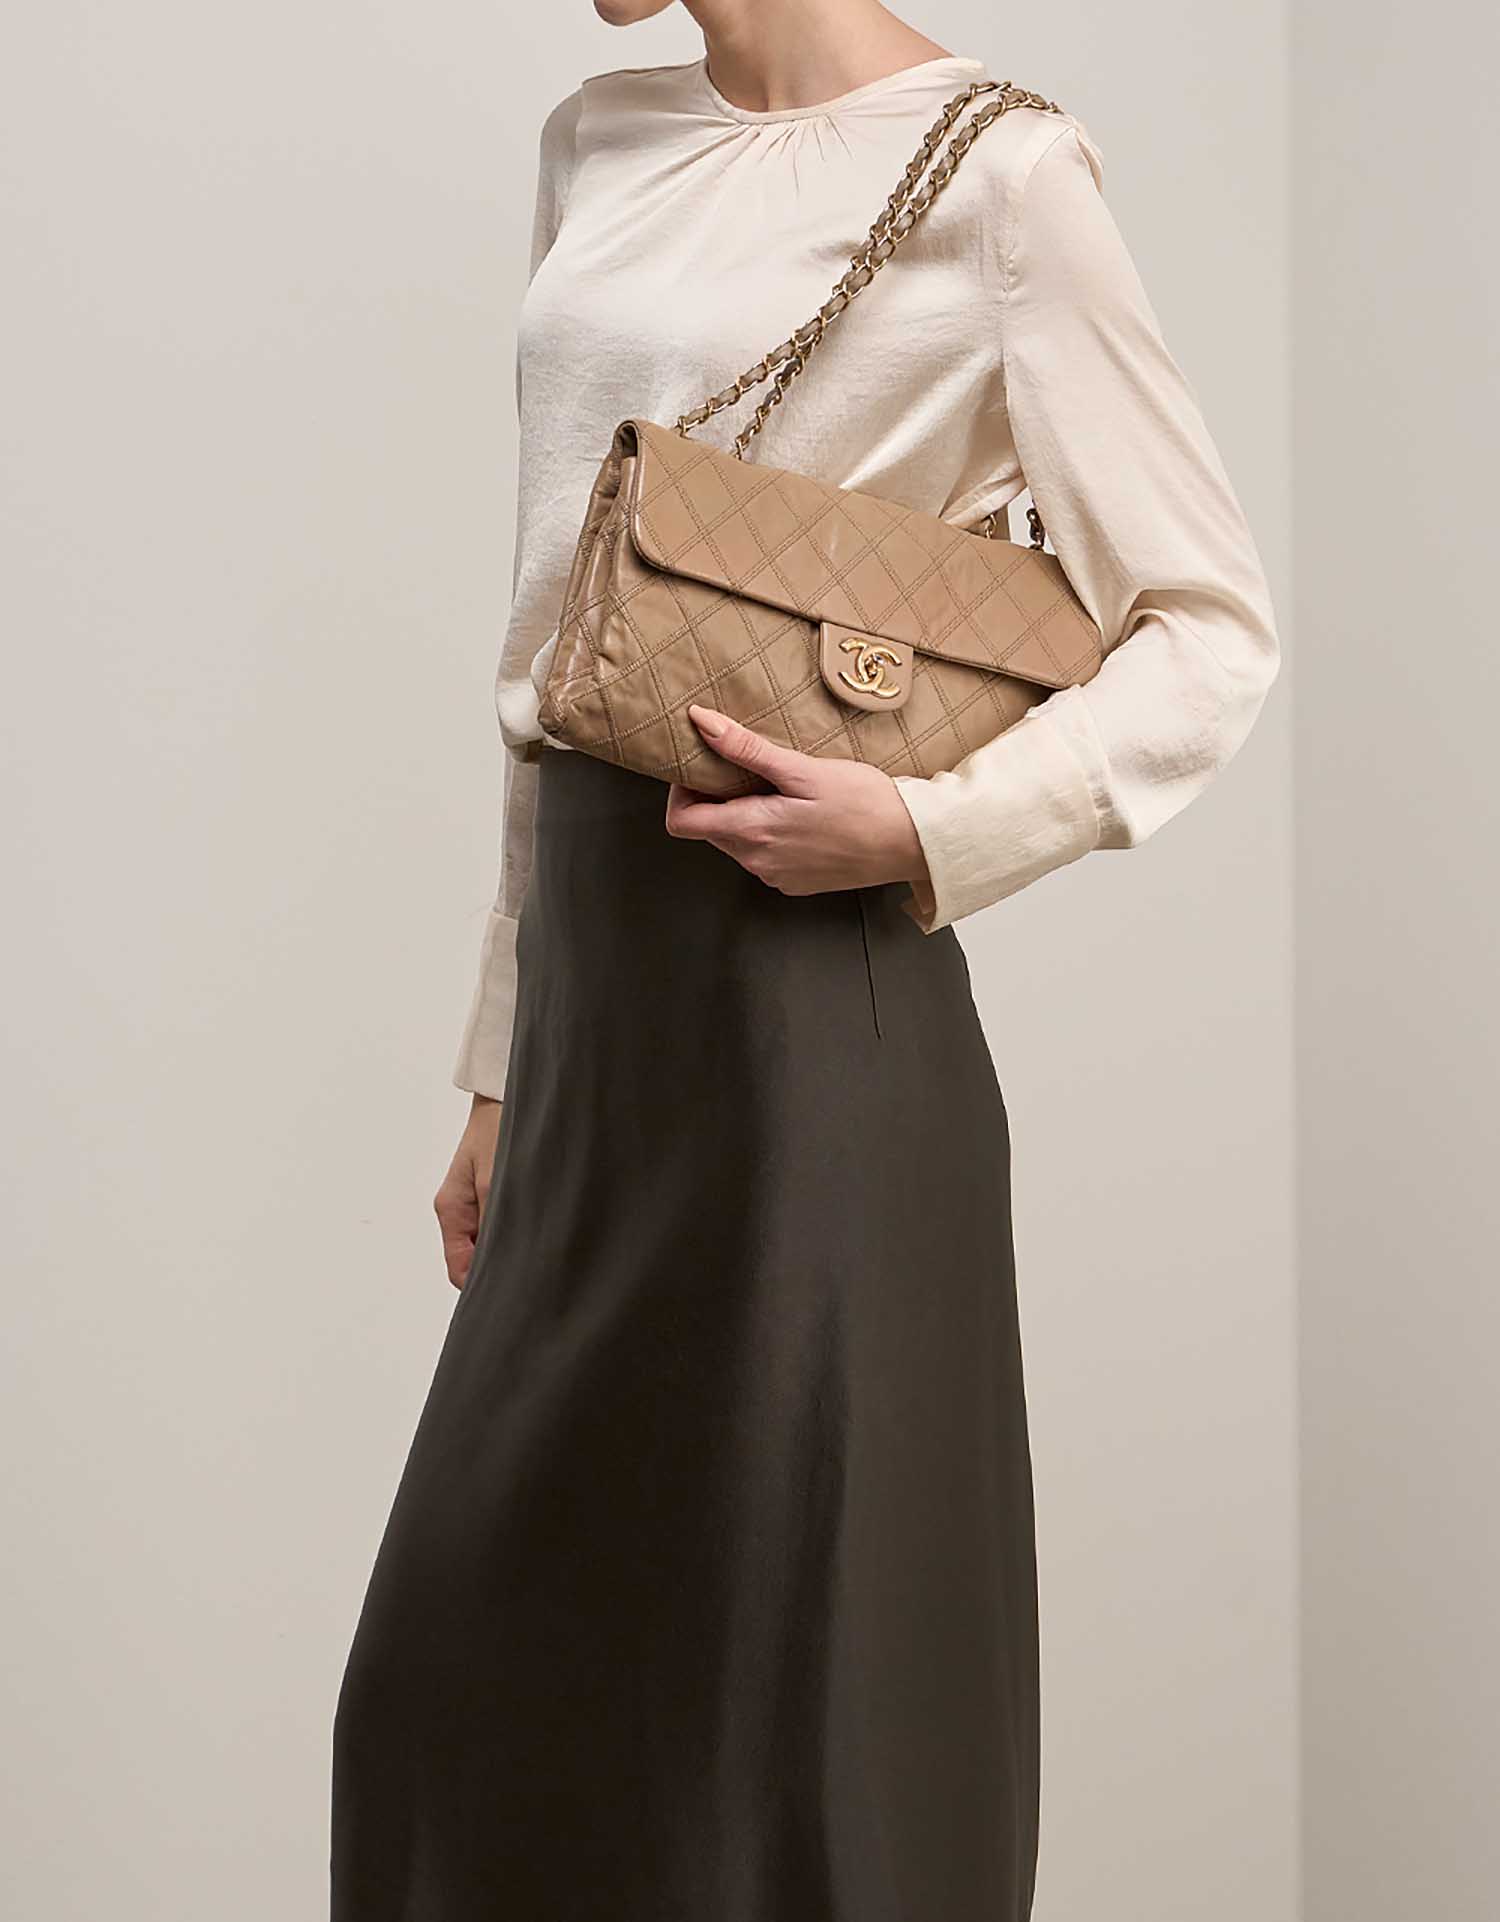 Chanel Timeless Jumbo Beige on Model | Verkaufen Sie Ihre Designer-Tasche auf Saclab.com